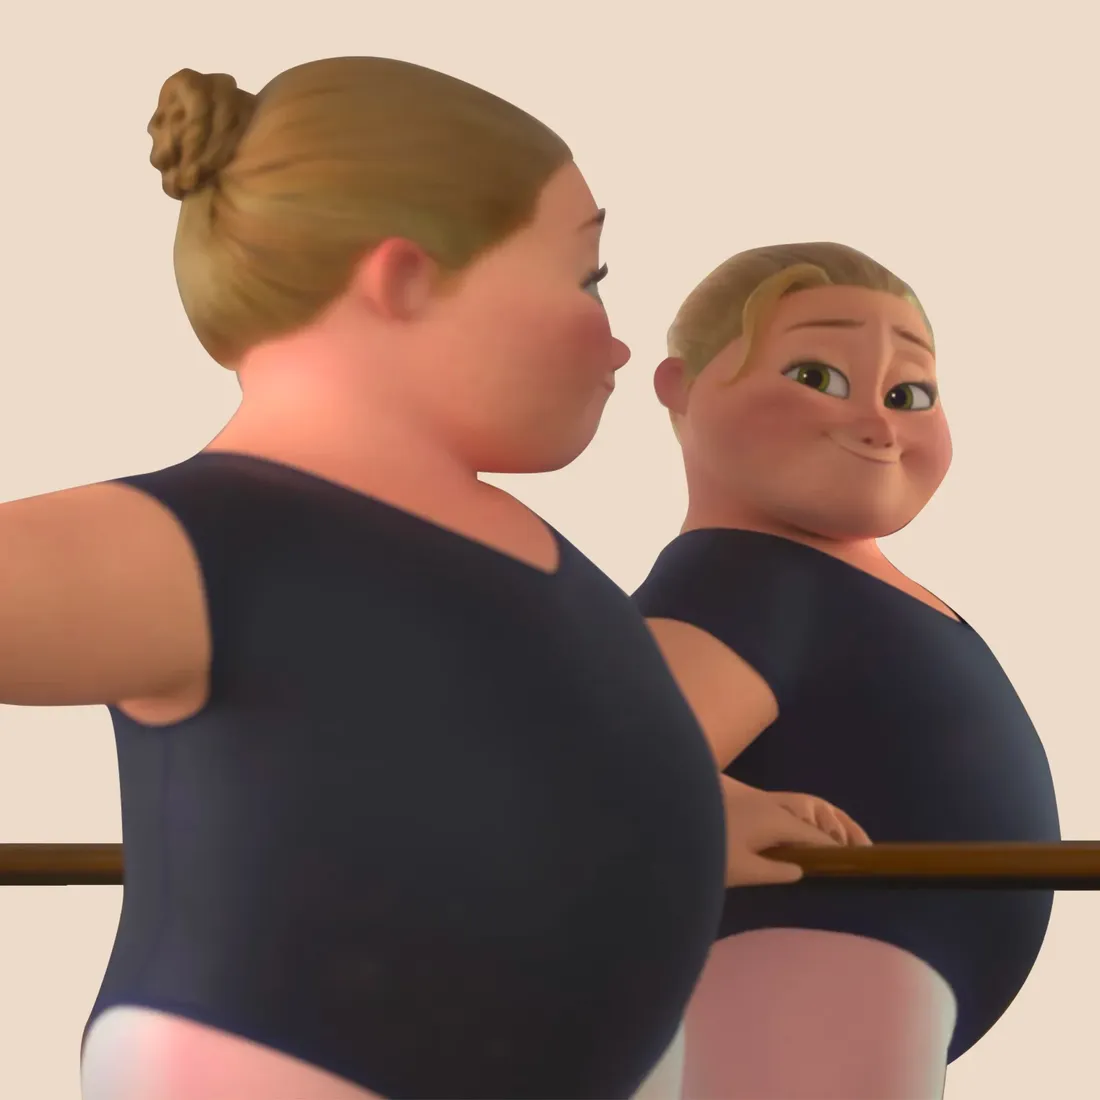 Reflet : le nouveau film de Disney aborde la dysmorphie corporelle avec une héroïne plus-size